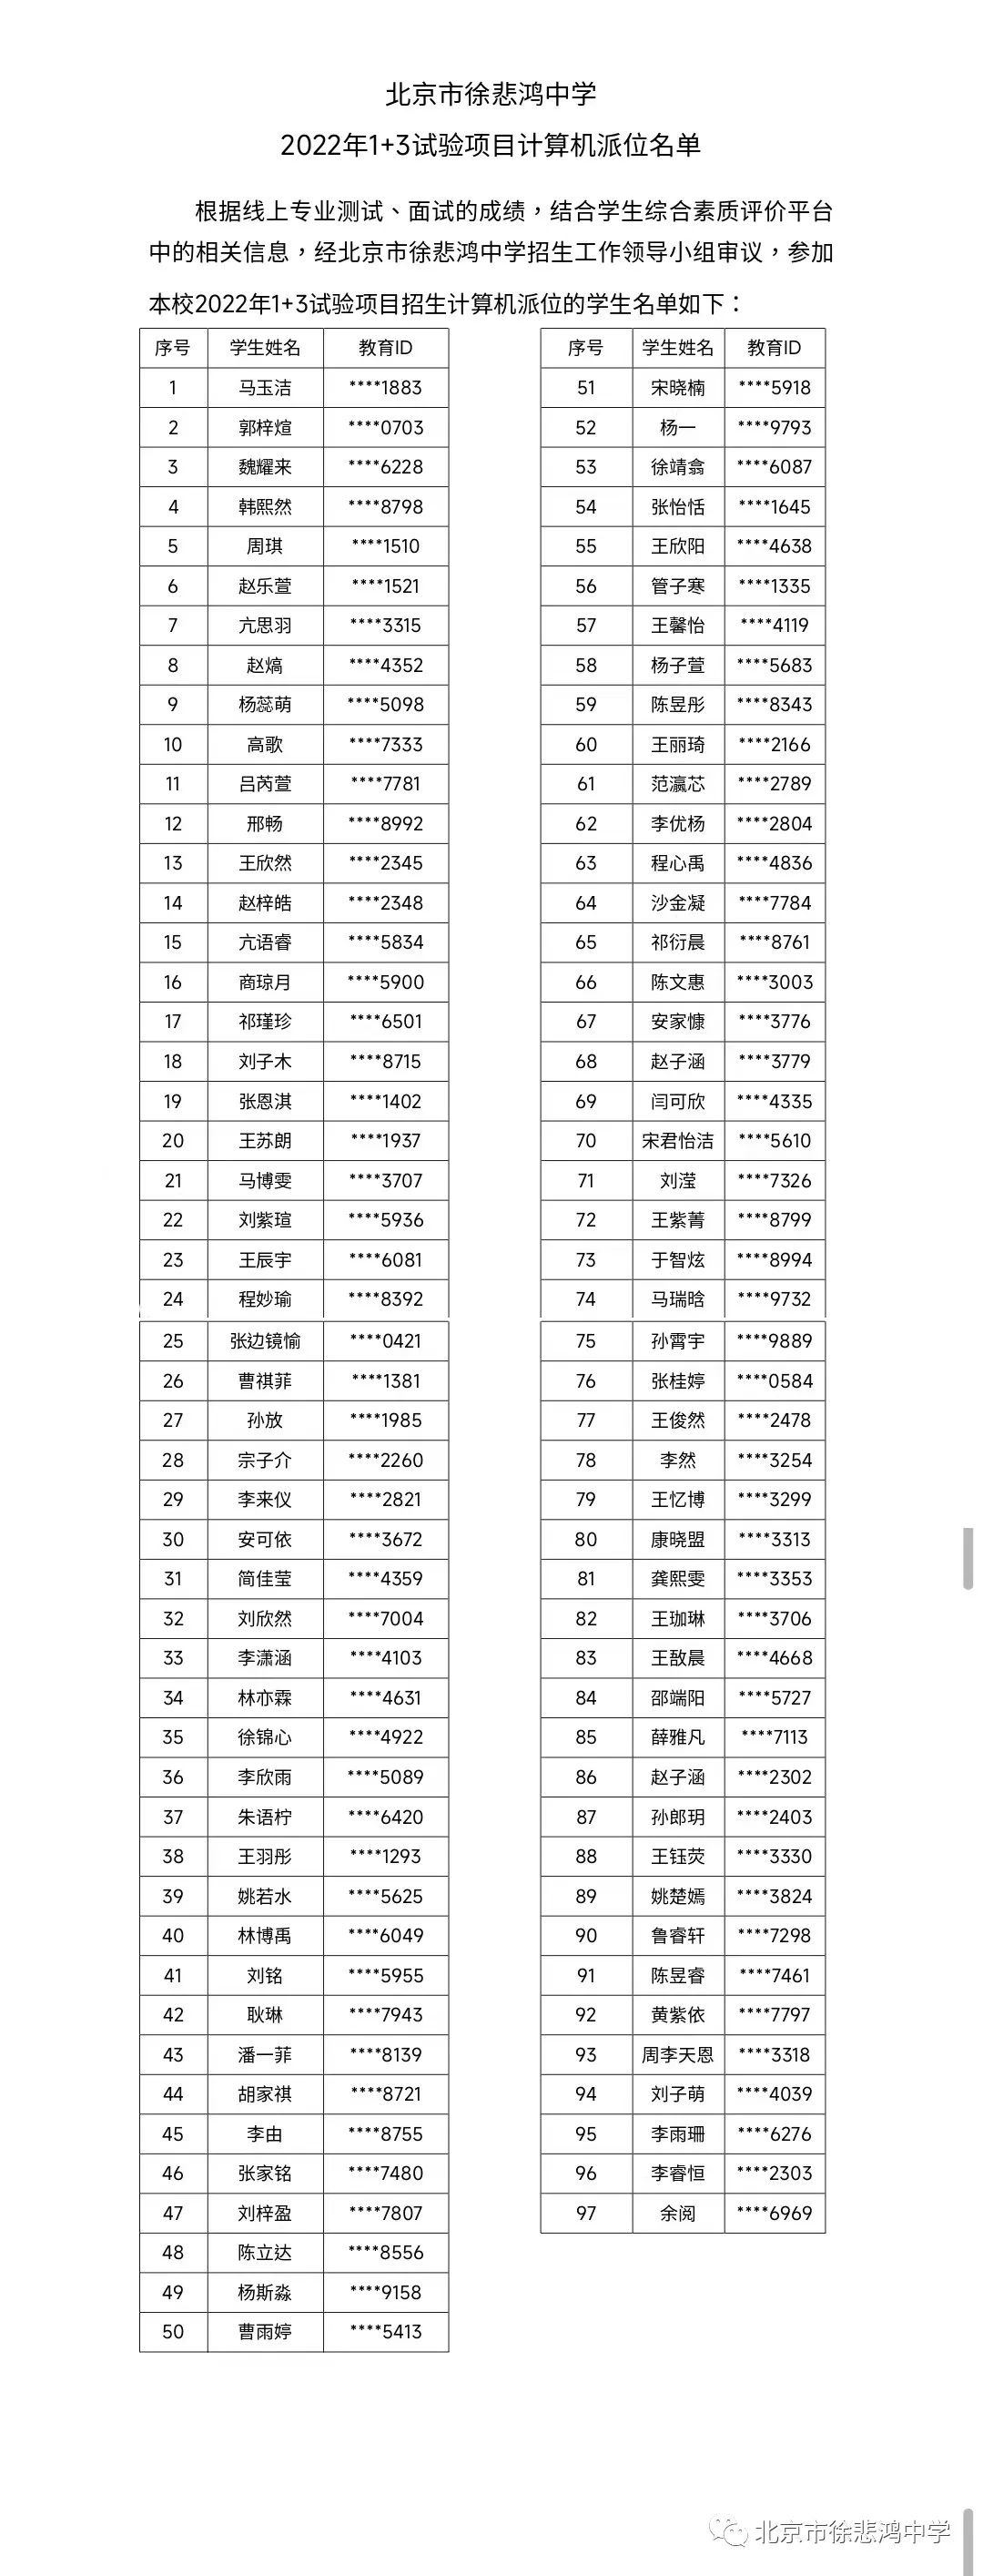 北京市徐悲鸿中学2022年1+3试验项目计算机派位名单